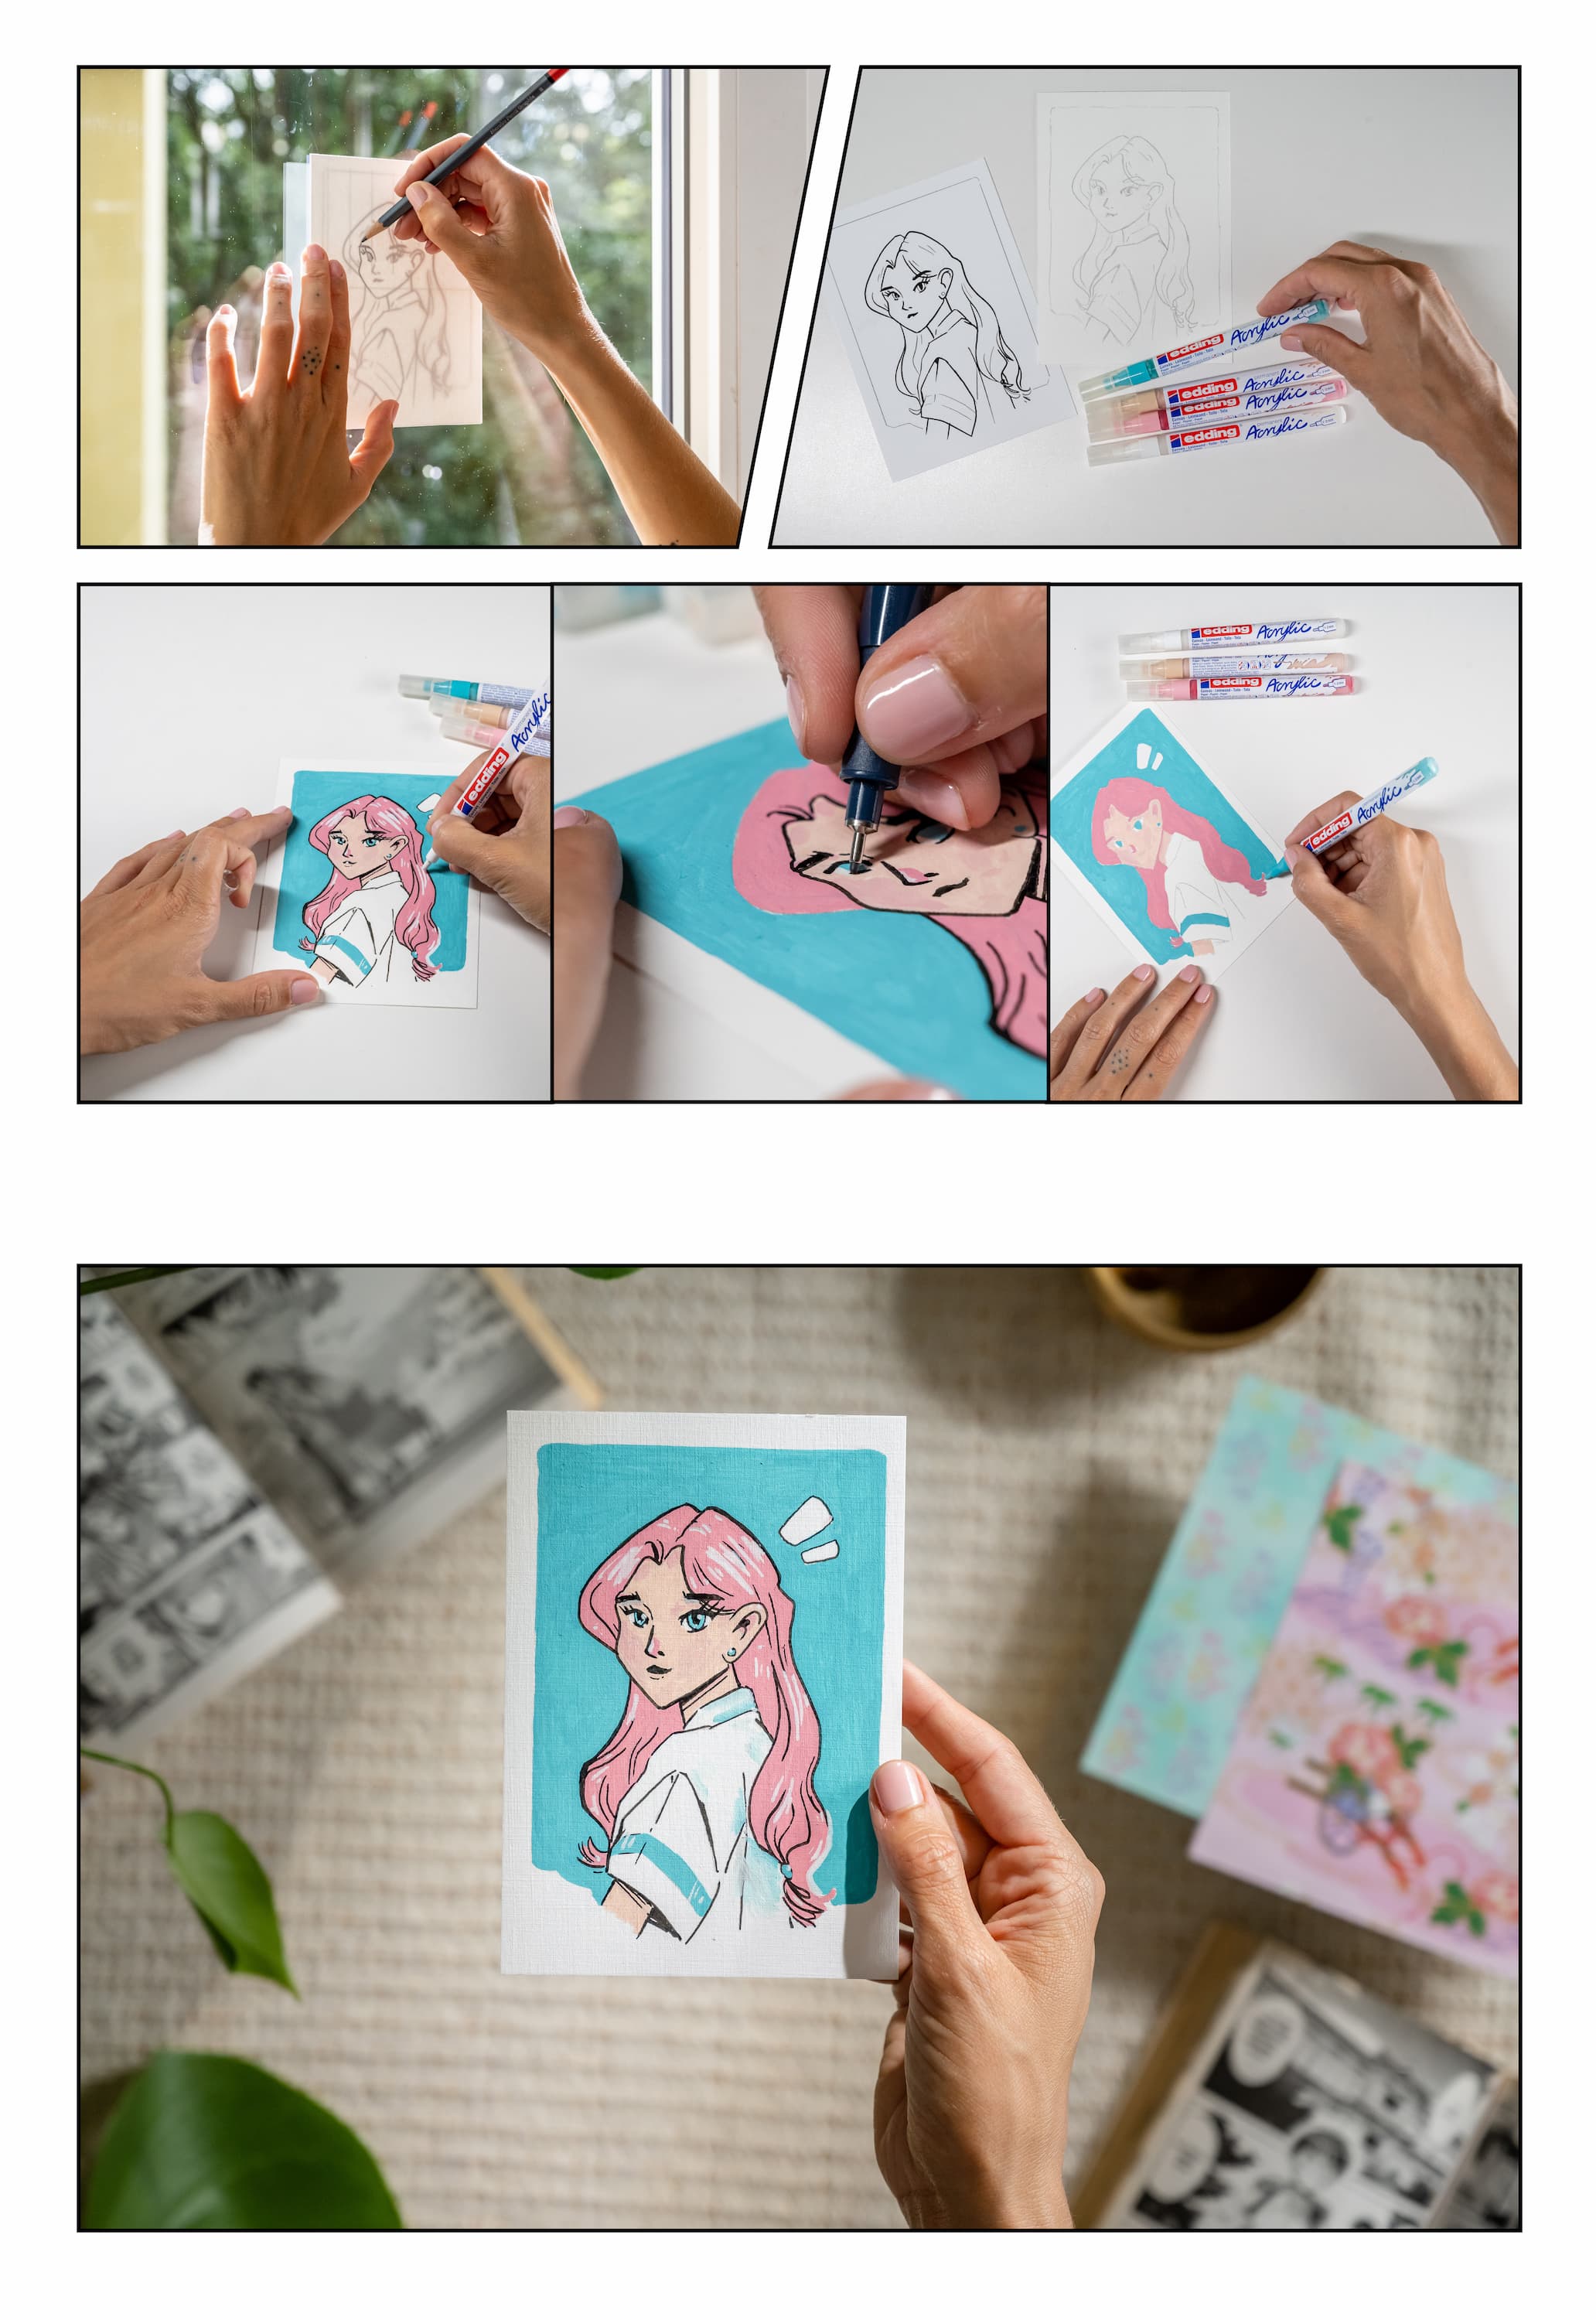 Schritt-für-Schritt-Illustration eines Künstlers, der eine handgezeichnete und farbige edding Acryl Kreativset Manga-Figur auf einer Karte erstellt, von der ersten Skizze bis zum fertigen, lebendigen Kunstwerk.